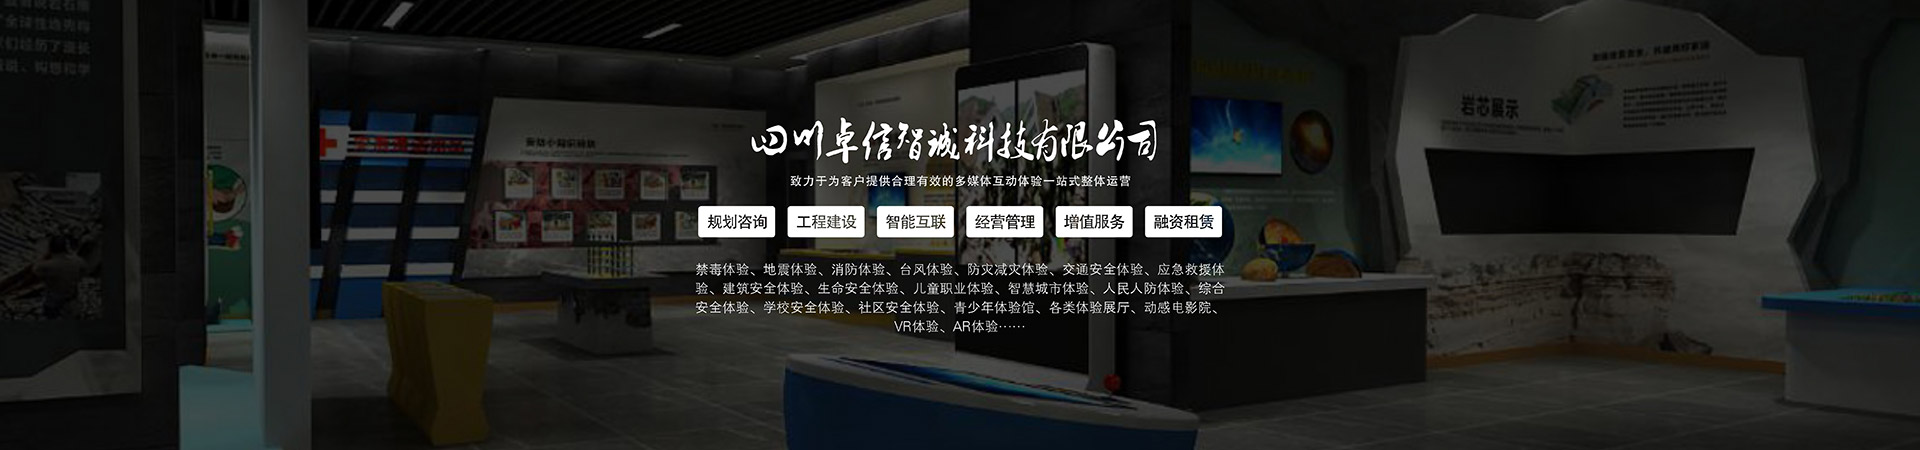 公共安全VR虚拟现实解决方案模拟仿真数字展厅